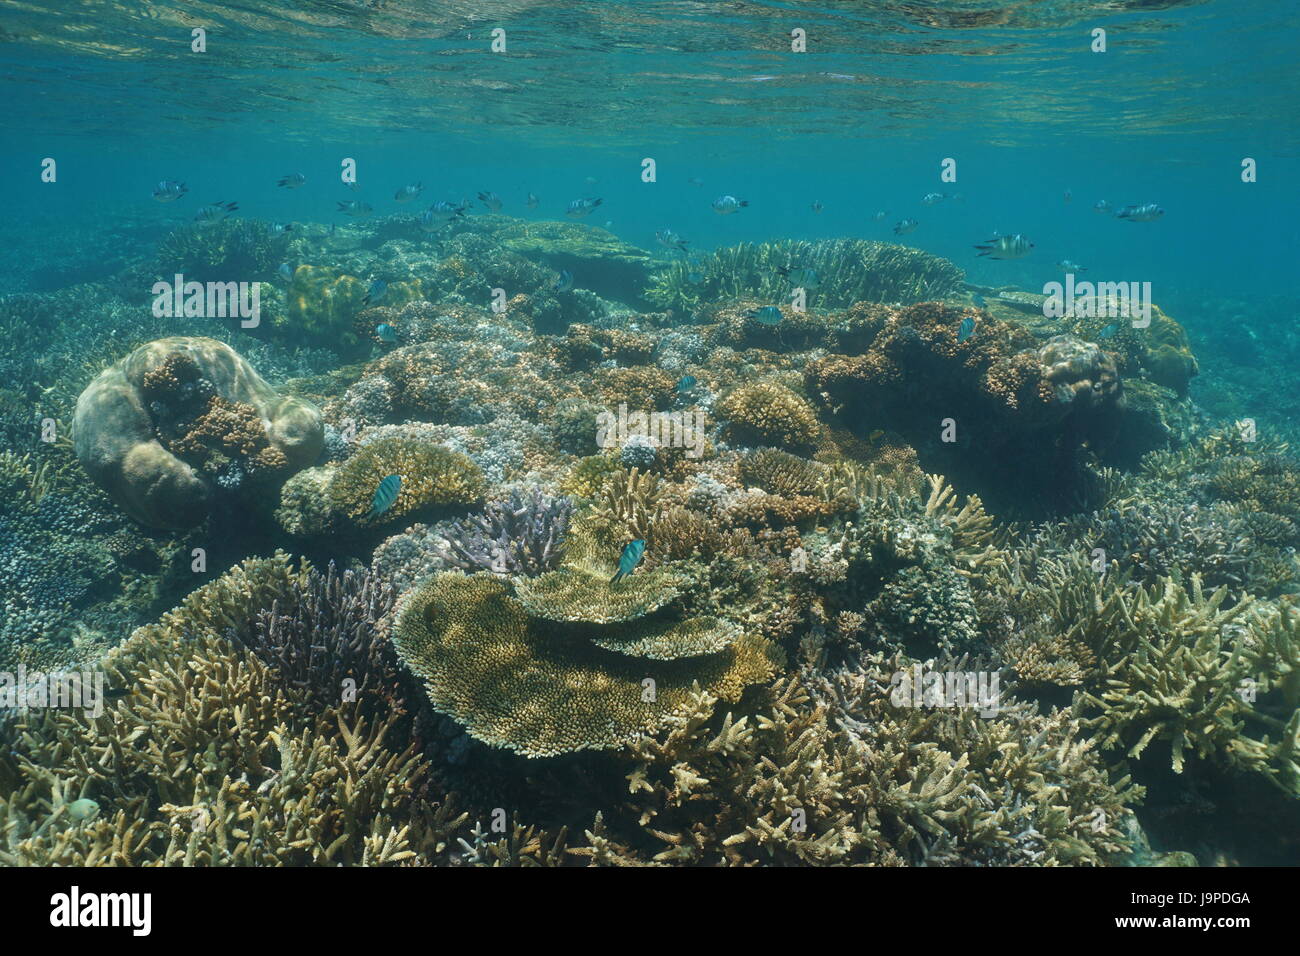 Submarino de arrecifes de coral saludables con suaves y corales pétreos en aguas poco profundas, la laguna de la isla de Grande-Terre, Nueva Caledonia, Océano Pacífico del sur Foto de stock